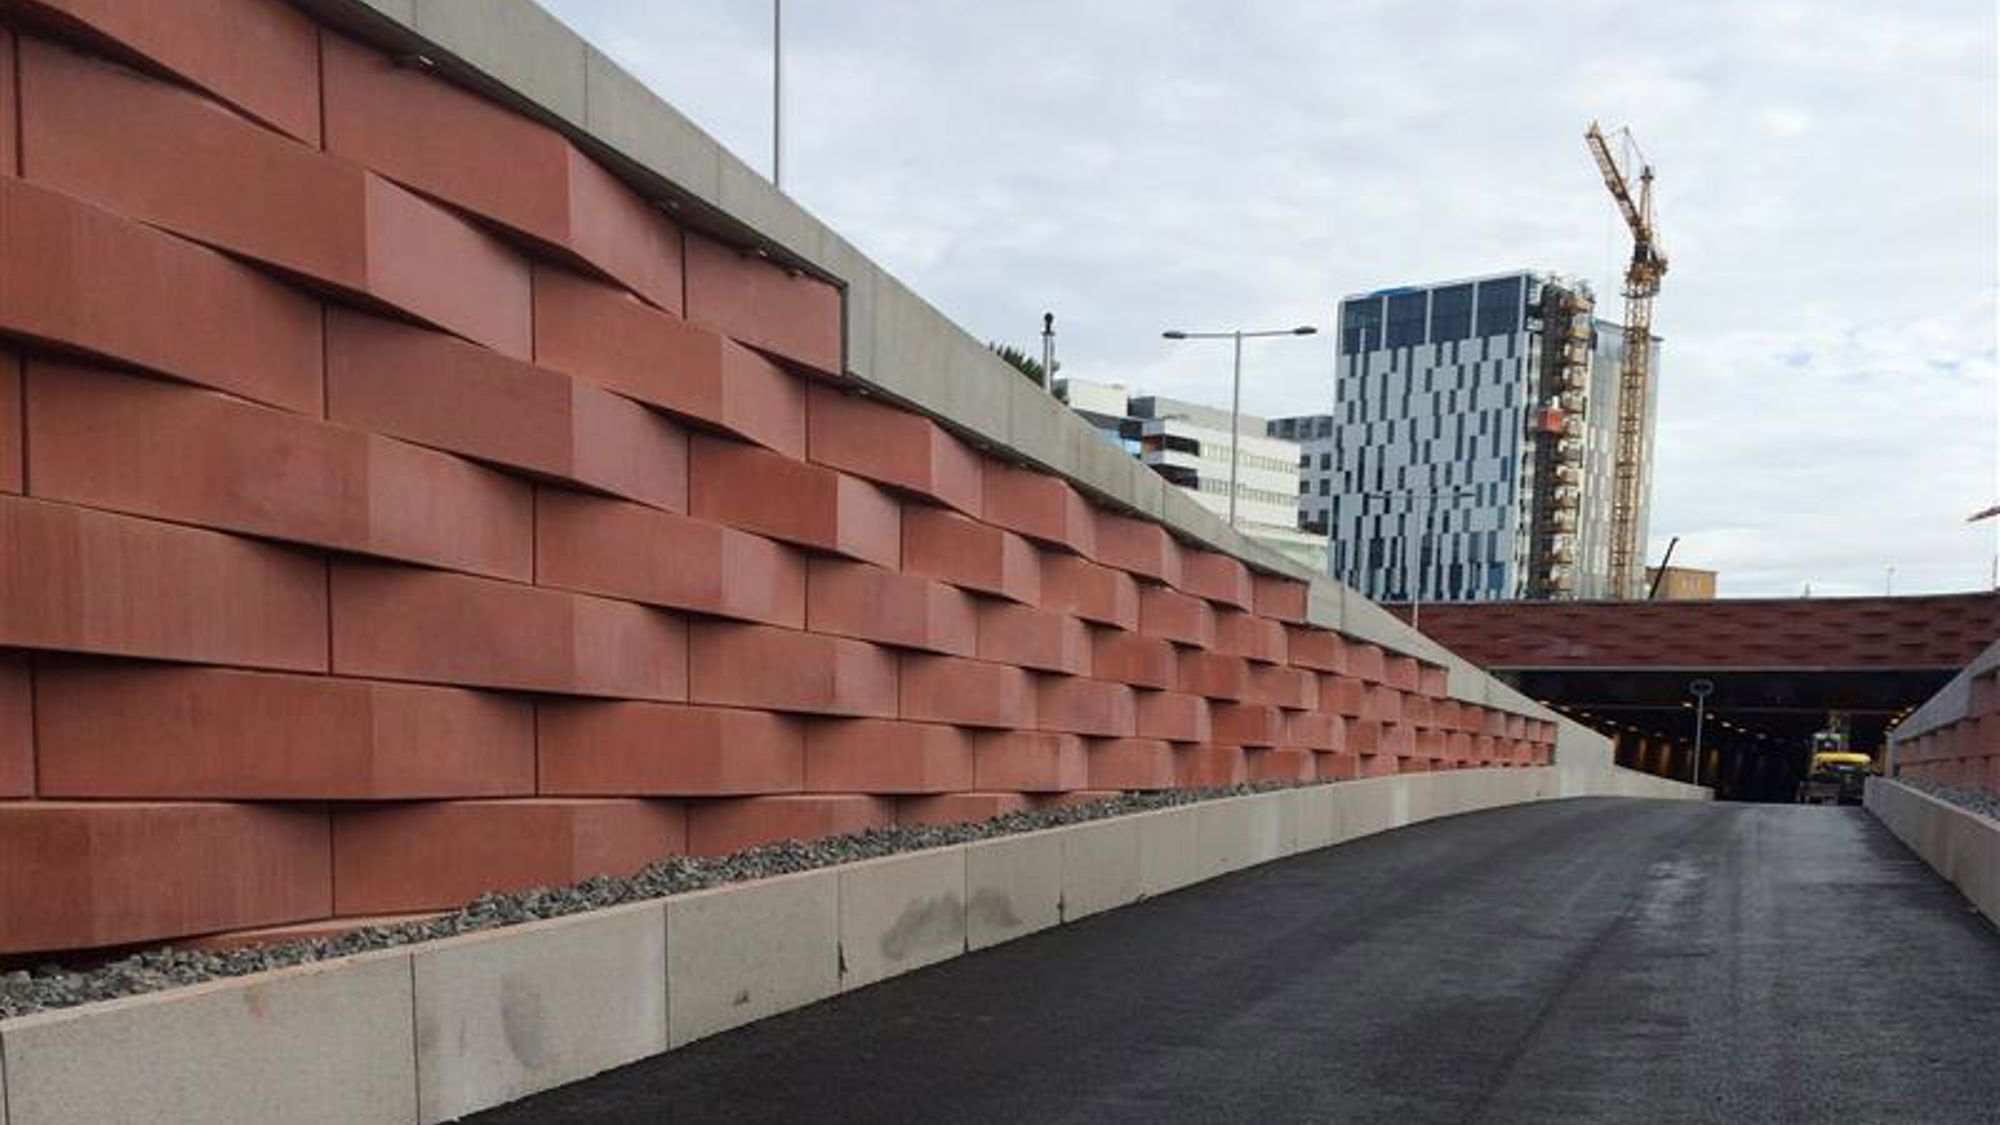 Konstfärdigt utförd mur i terrakottafärgad betong vid motorväg. Höghus och byggkran i bakgrunden. 